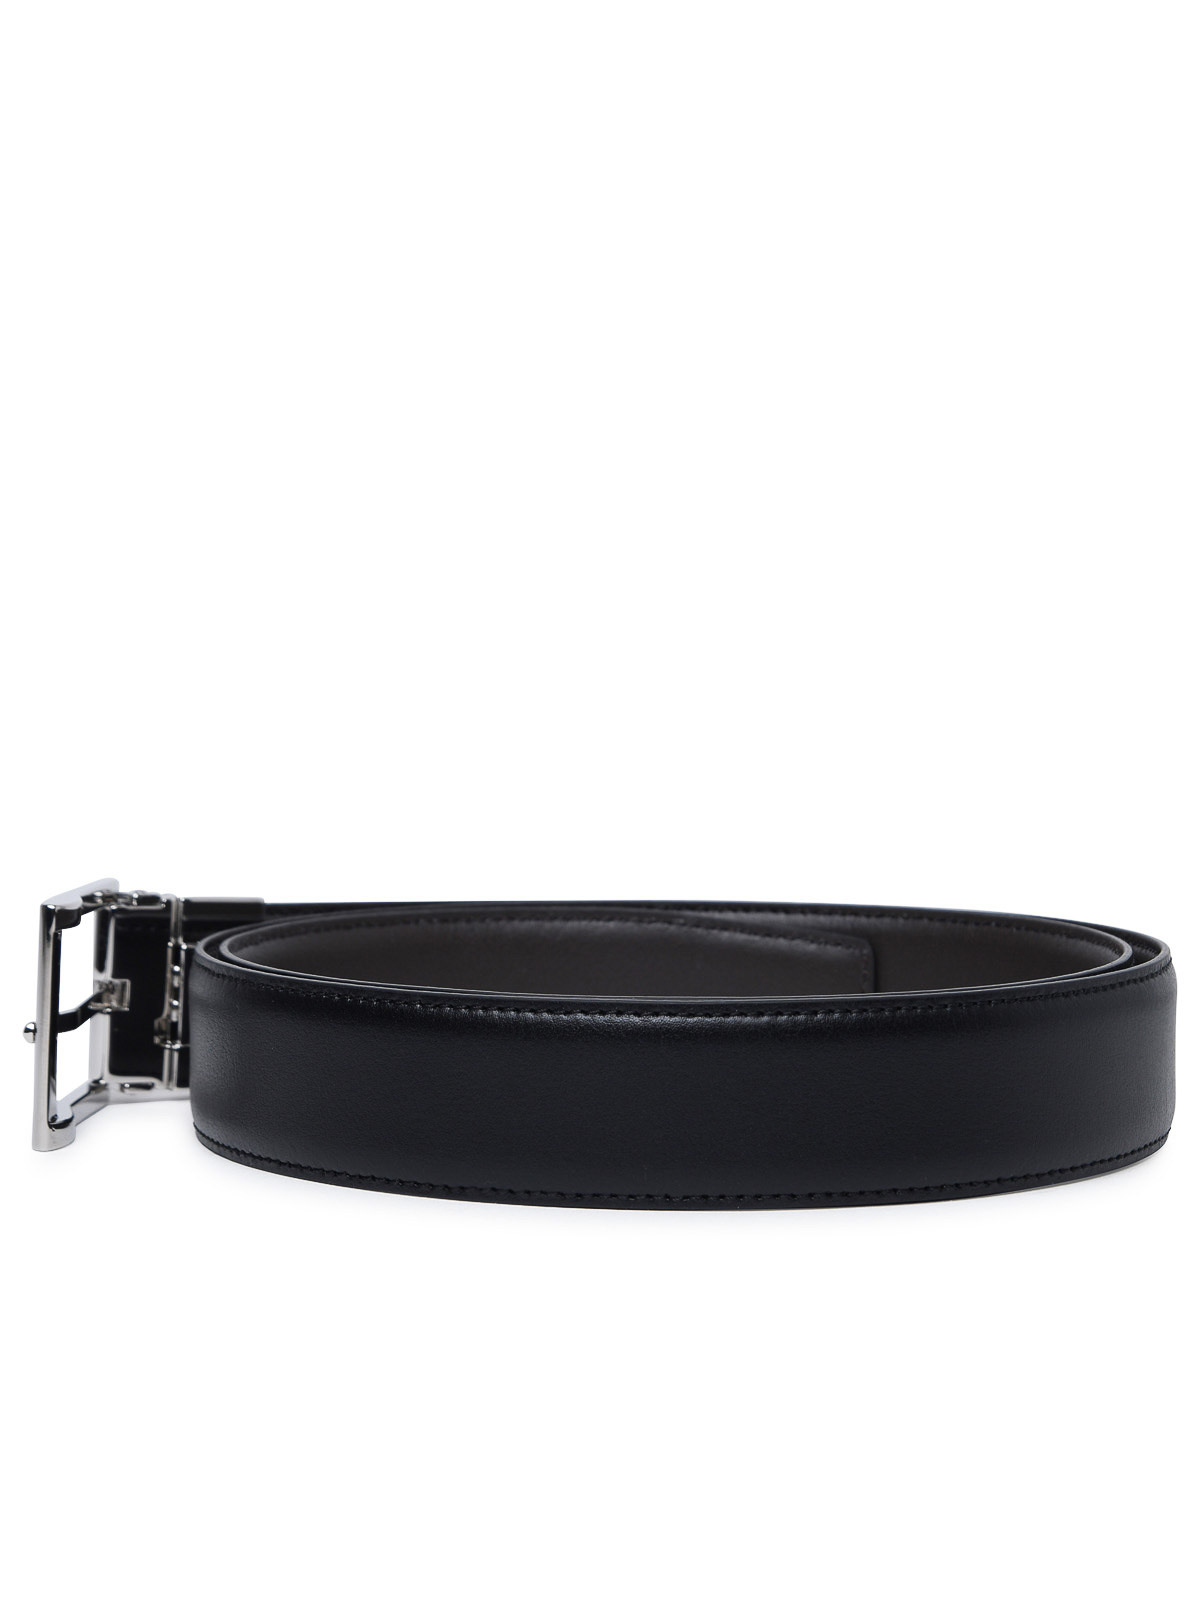 Shop Zegna Reversible Black Leather Belt